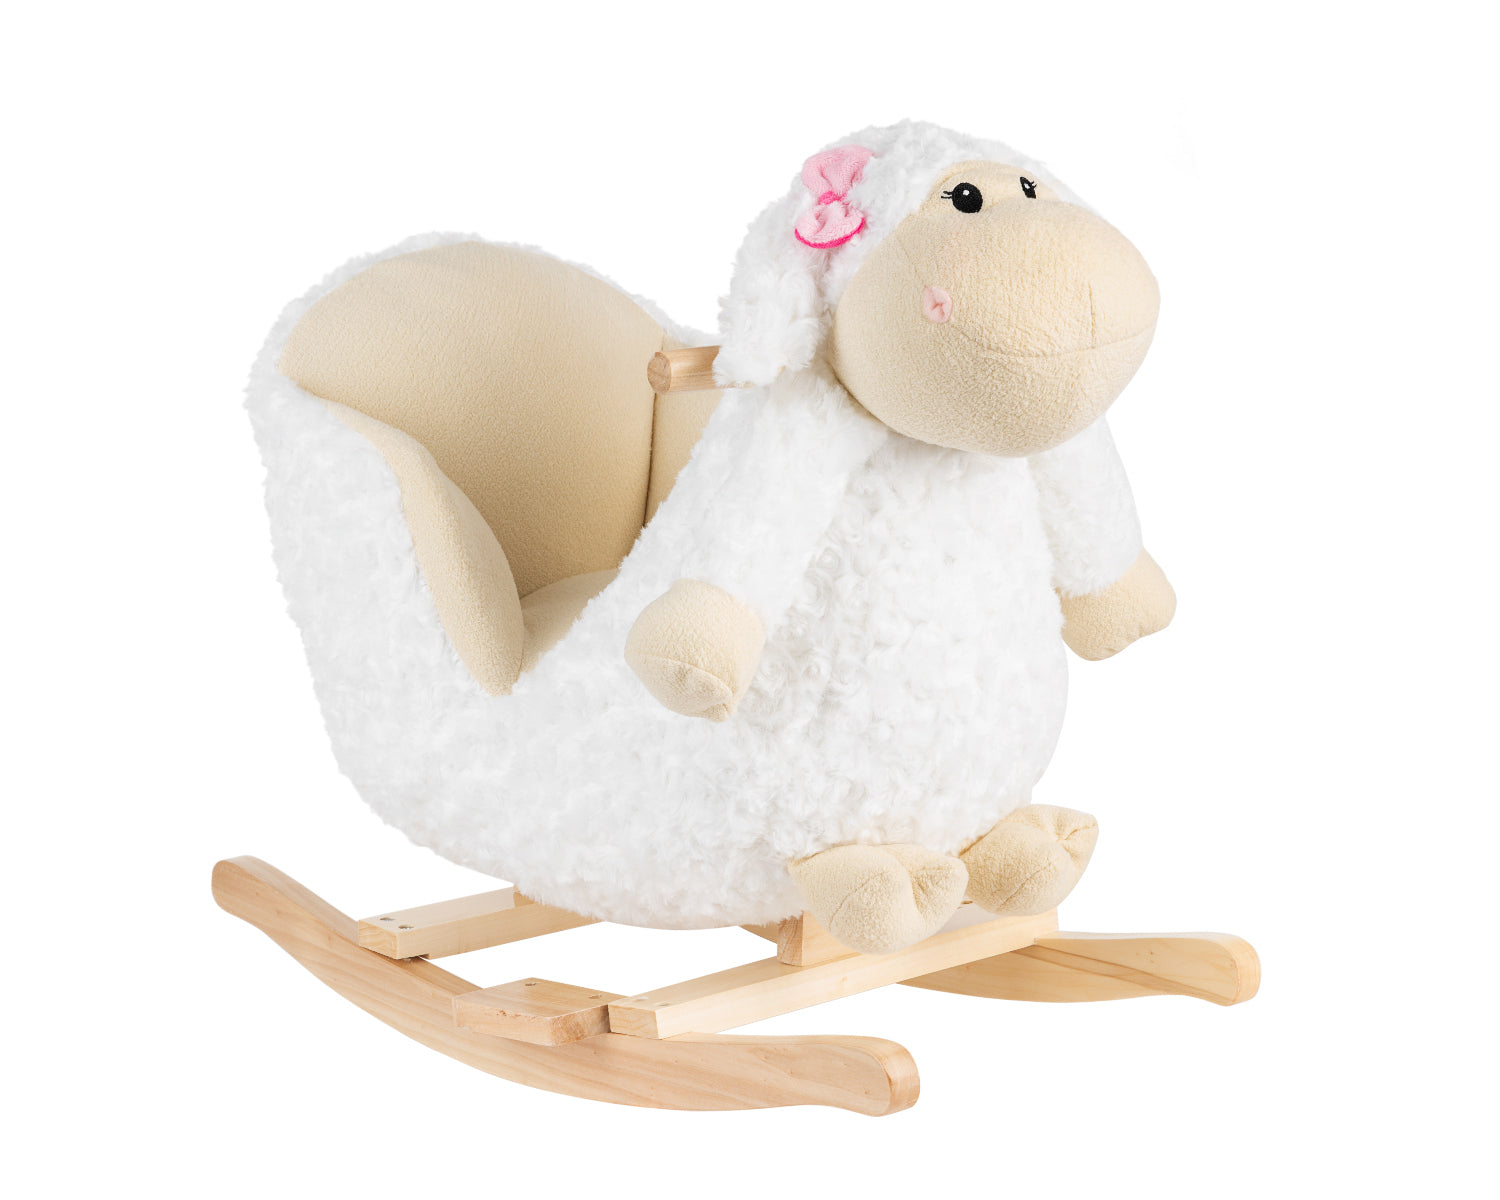 Kikka Boo igračka na ljuljanje - Sheep